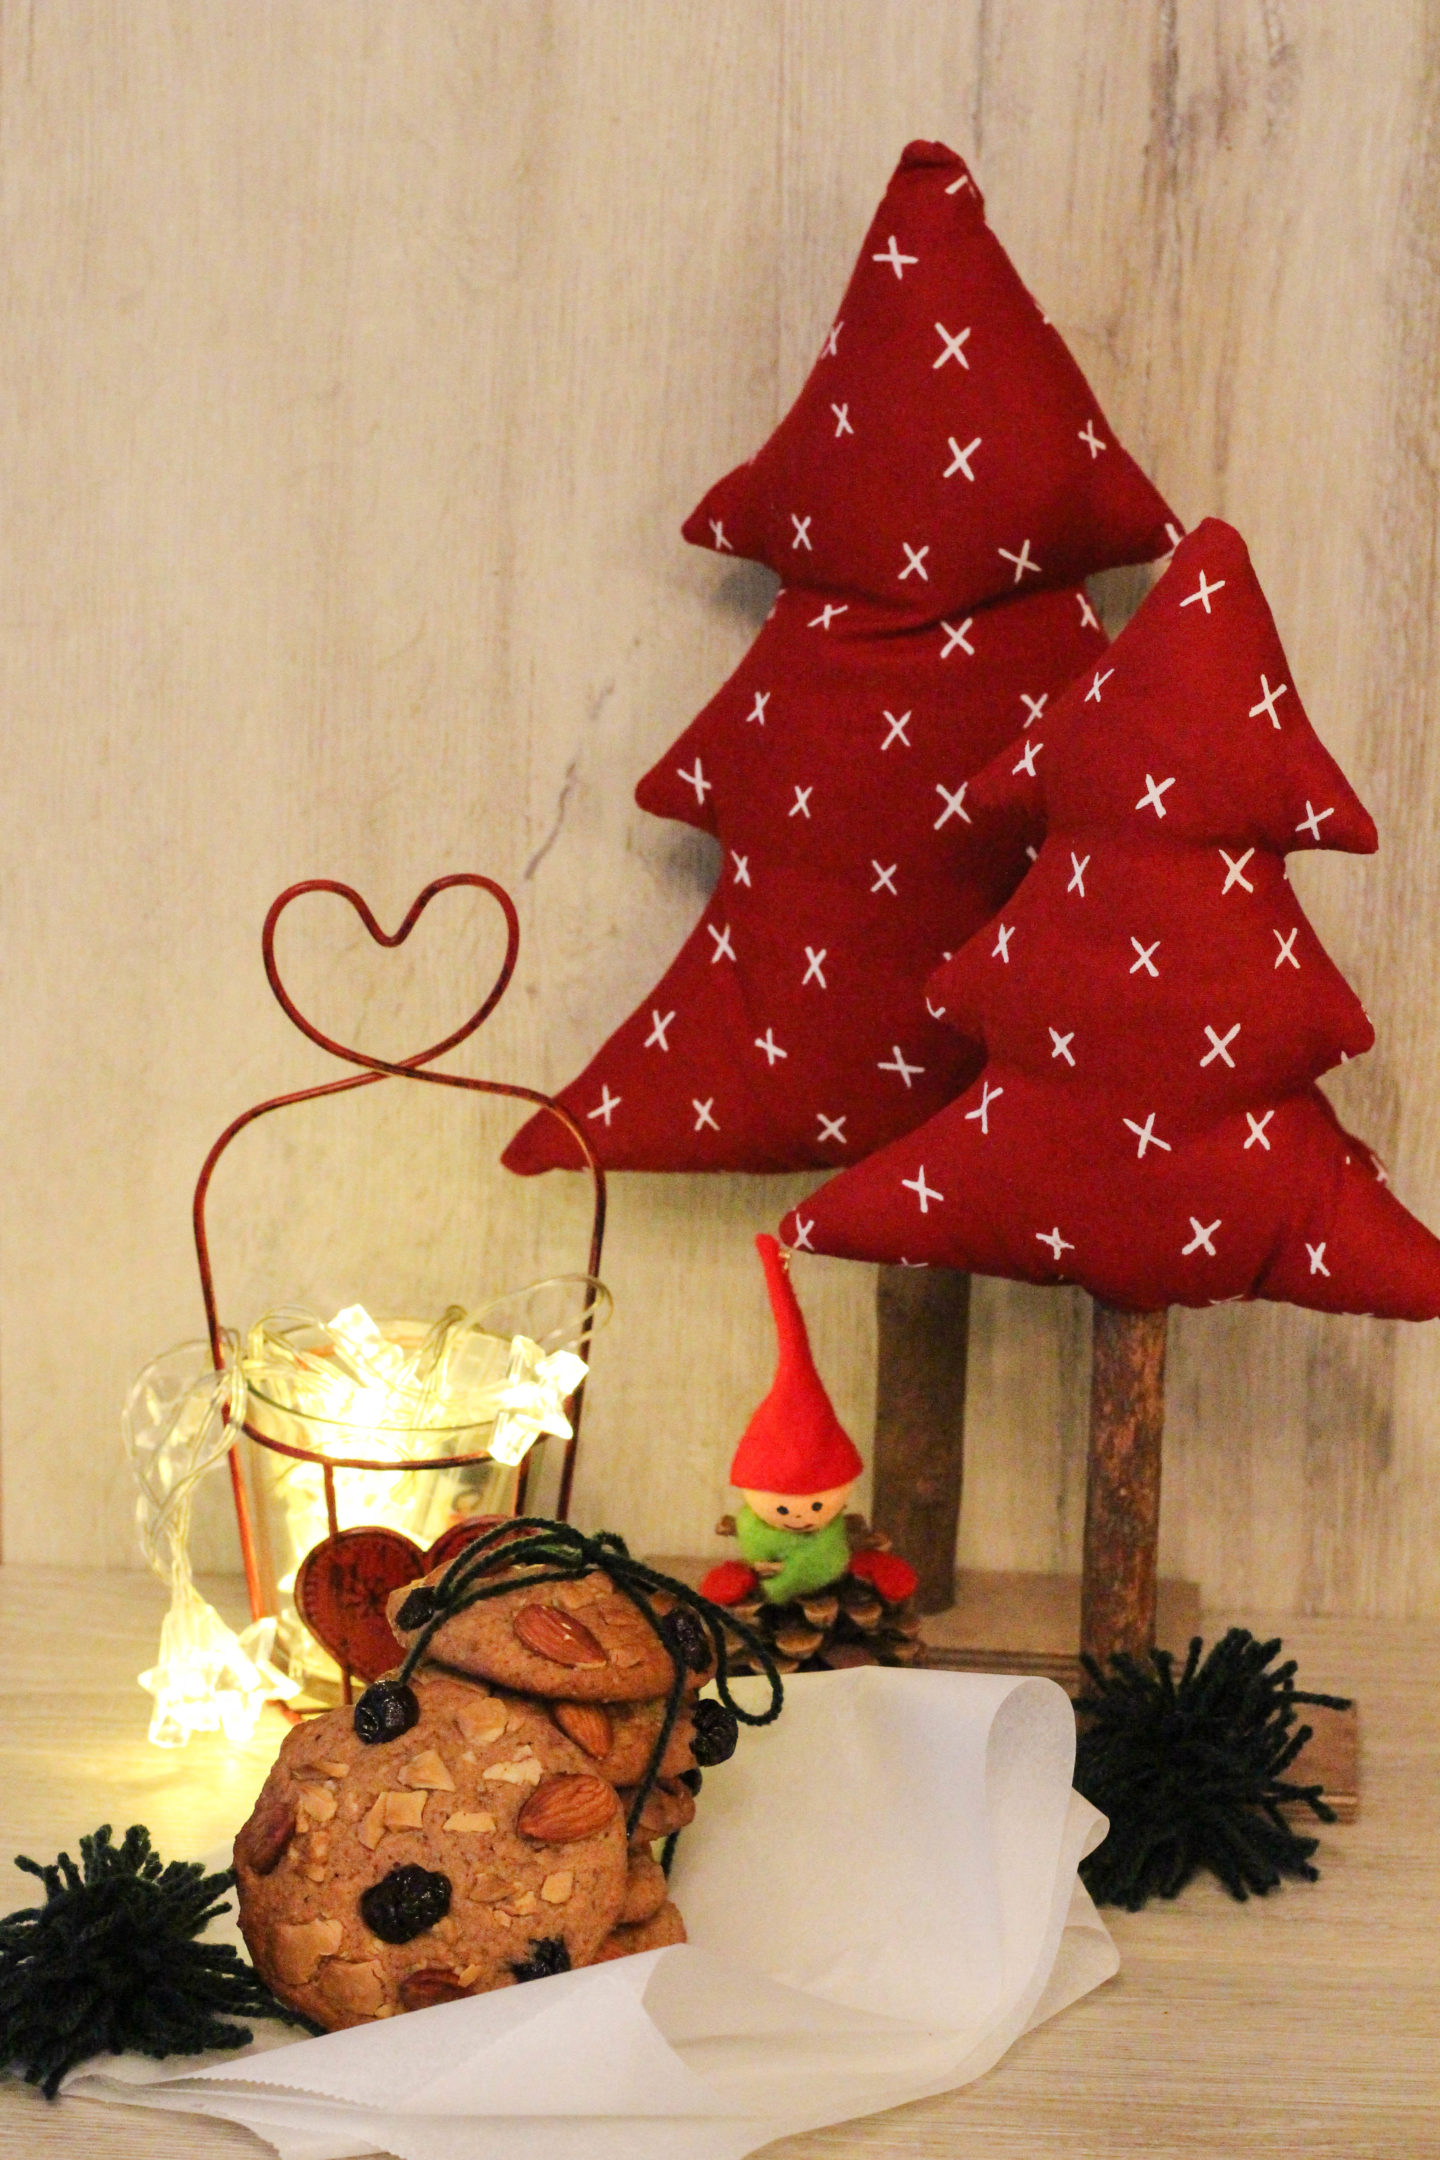 vegane-cookies-schokolade-cranberrys-weihnachten-christmas-1-von-1-7